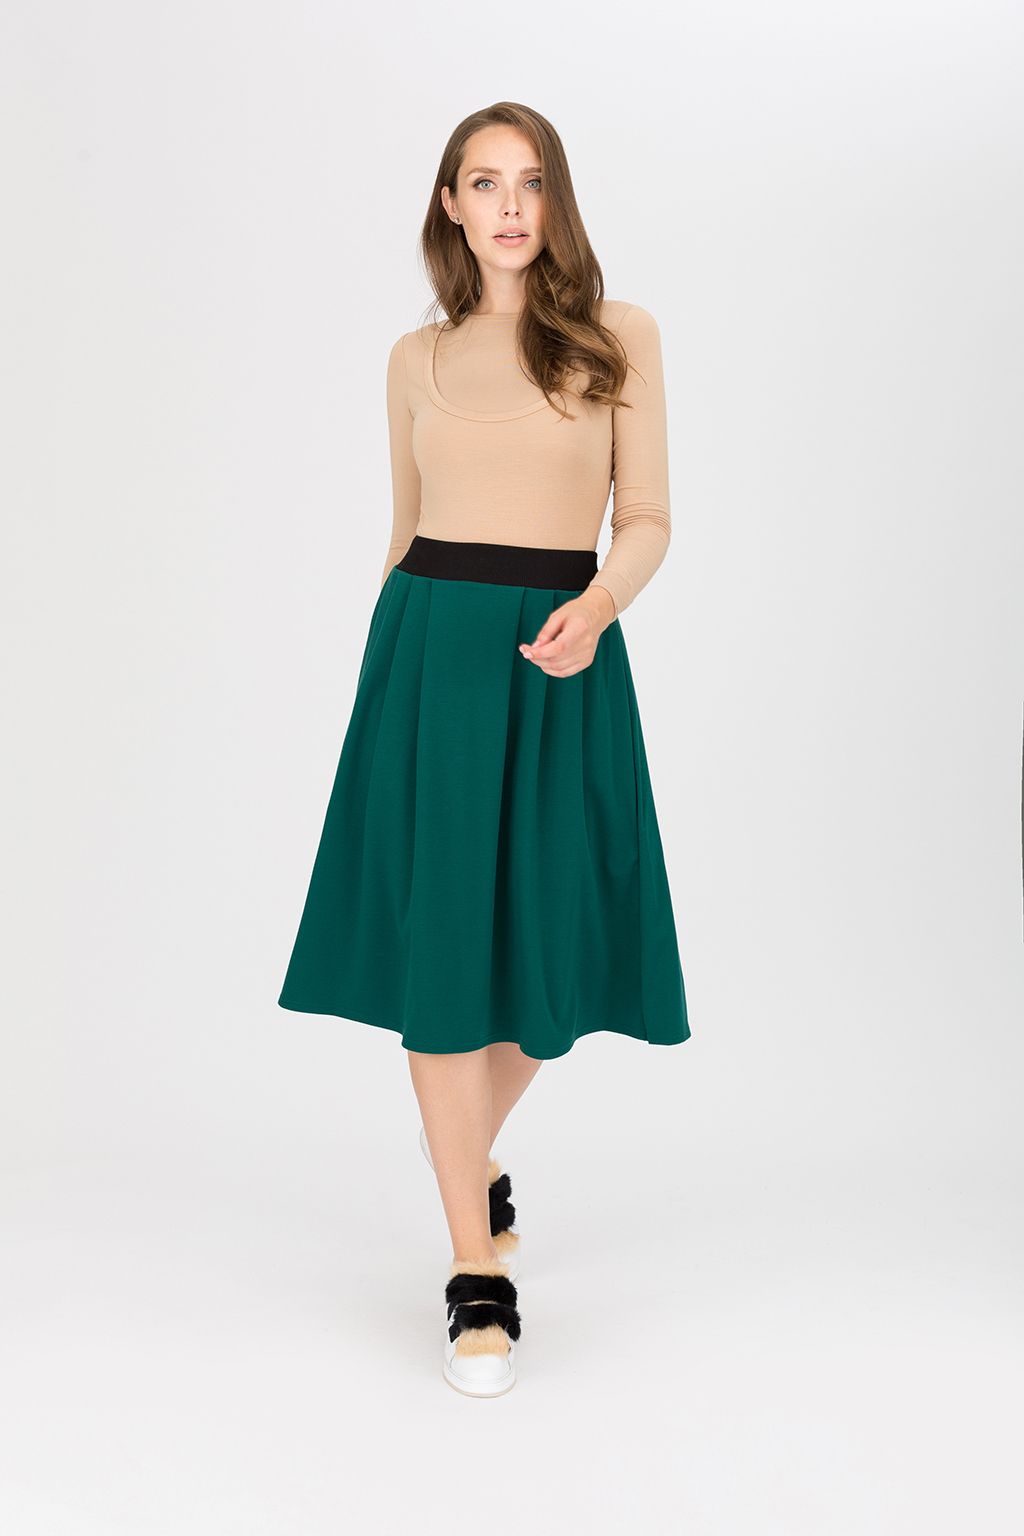 Плиссированная юбка: как и с чем носить в , чтобы быть стильной - Я Покупаю